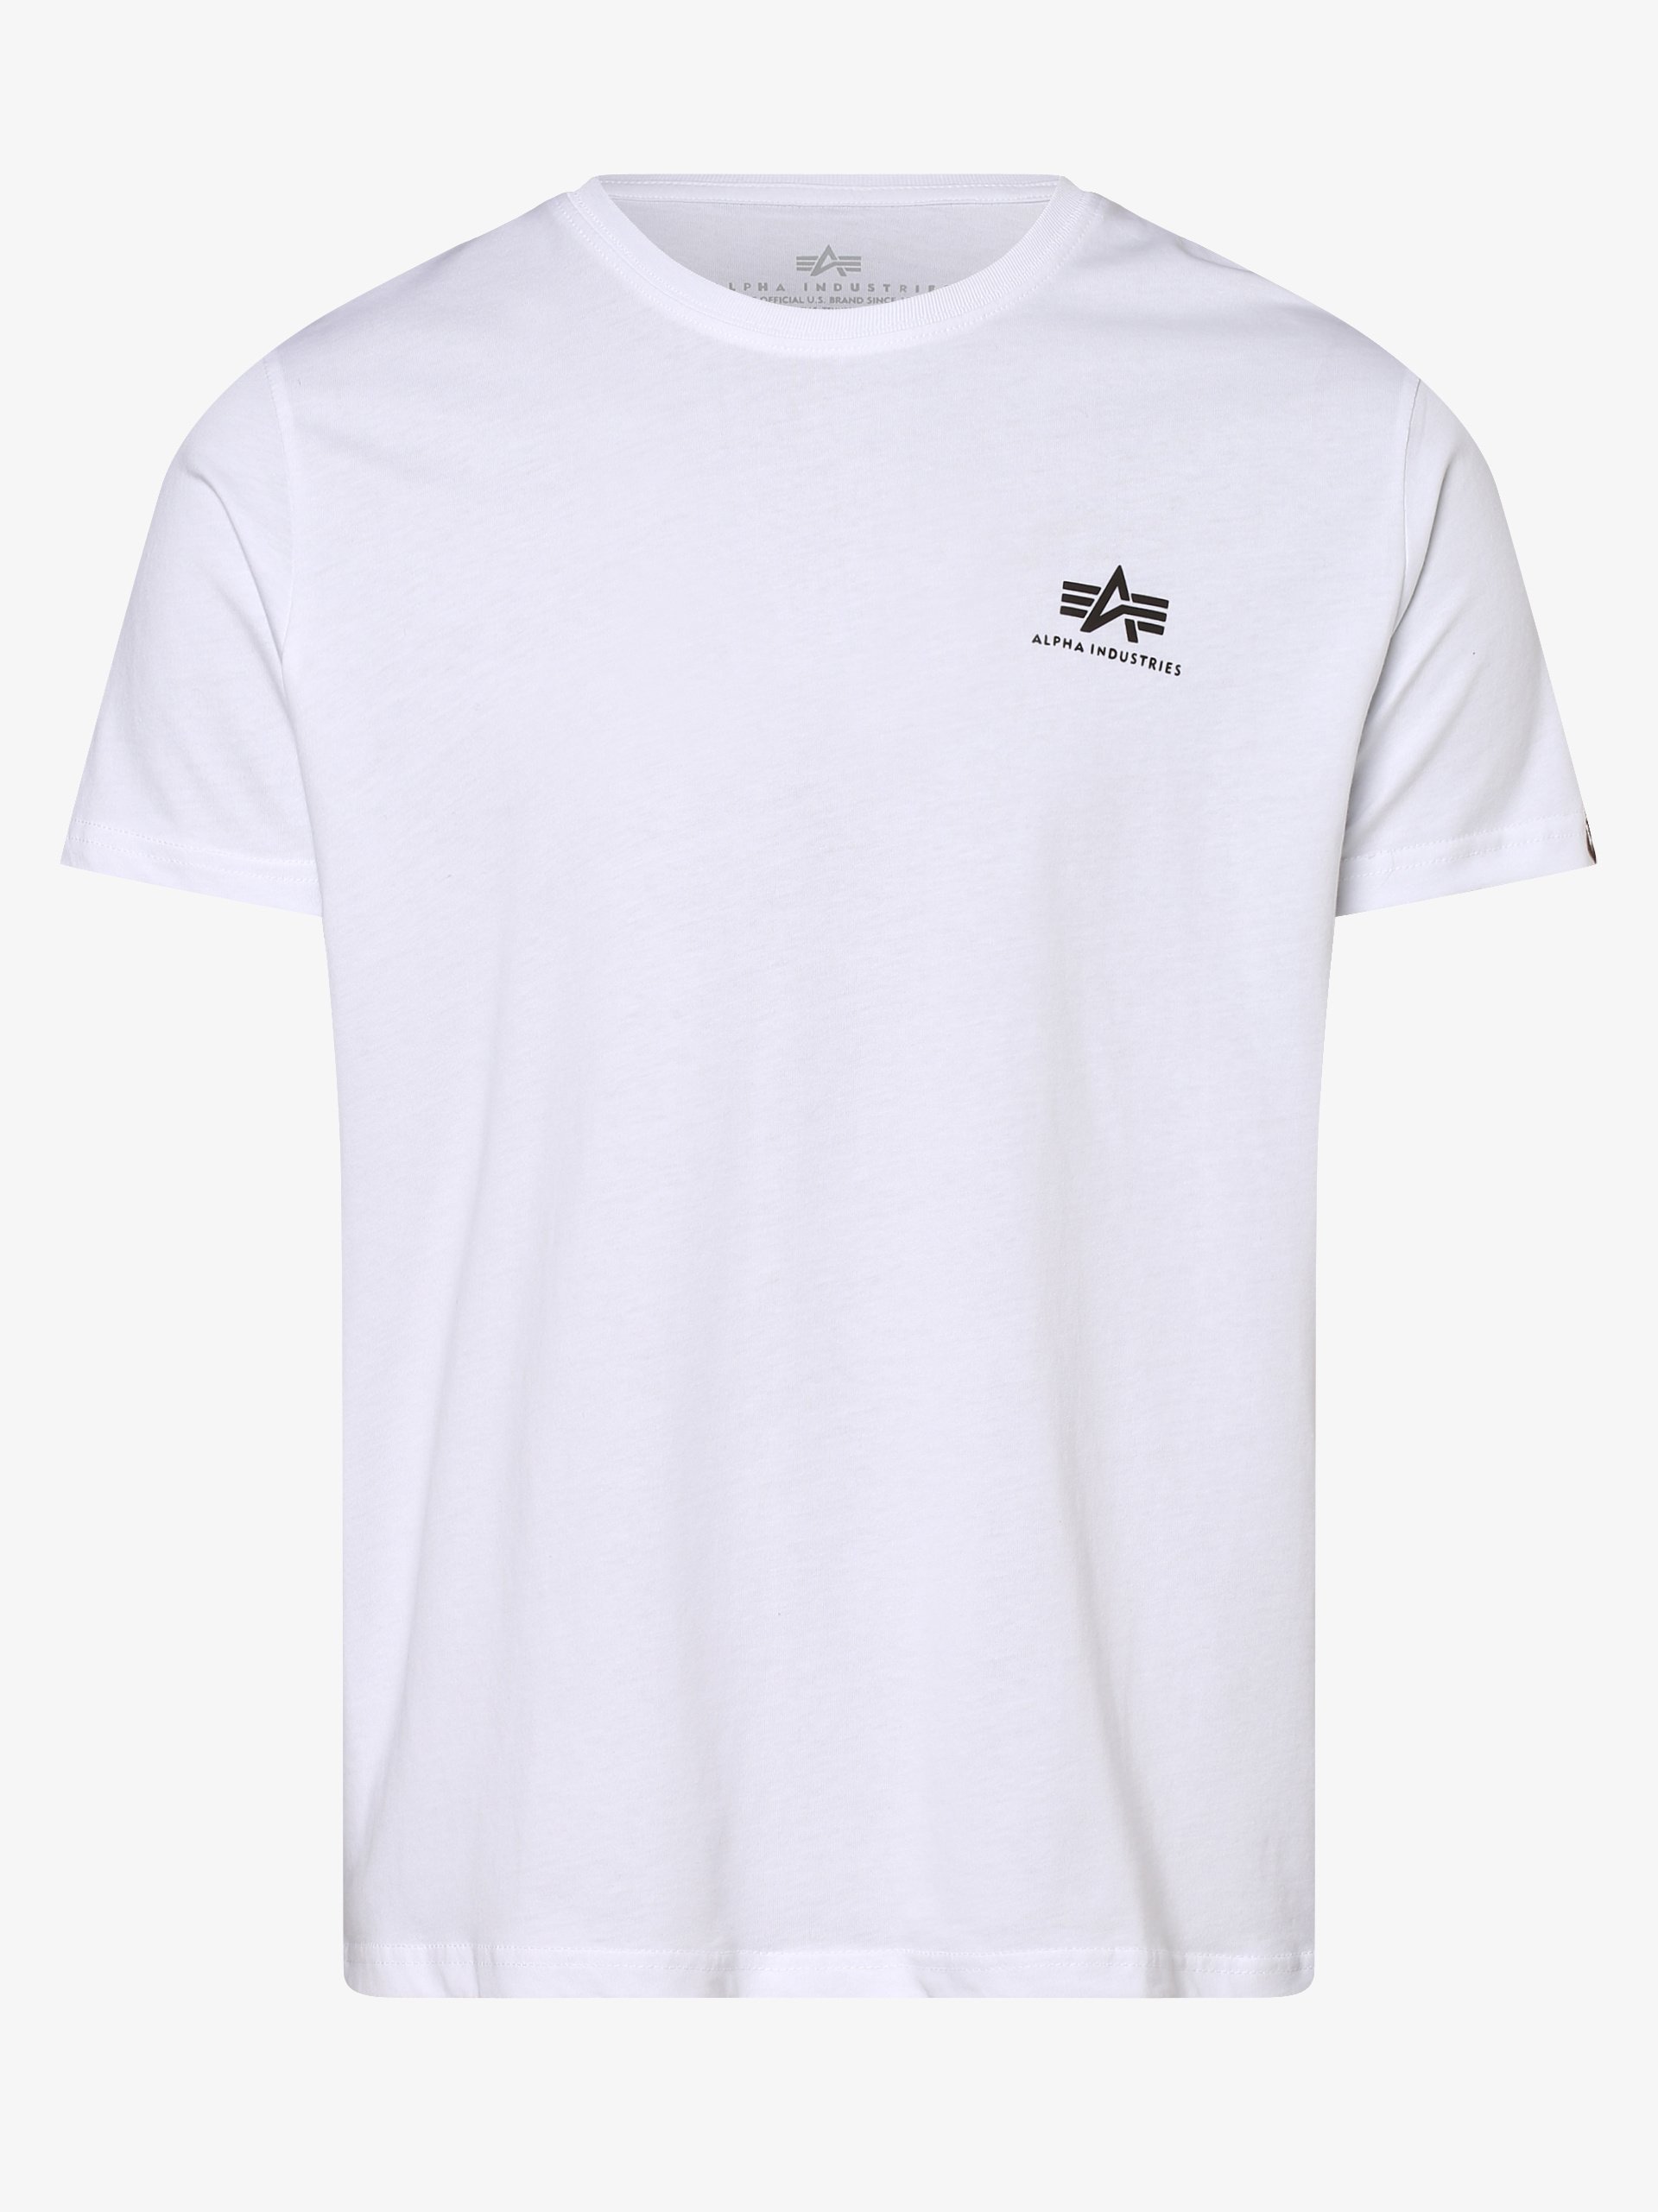 Alpha Industries Herren T-Shirt online kaufen